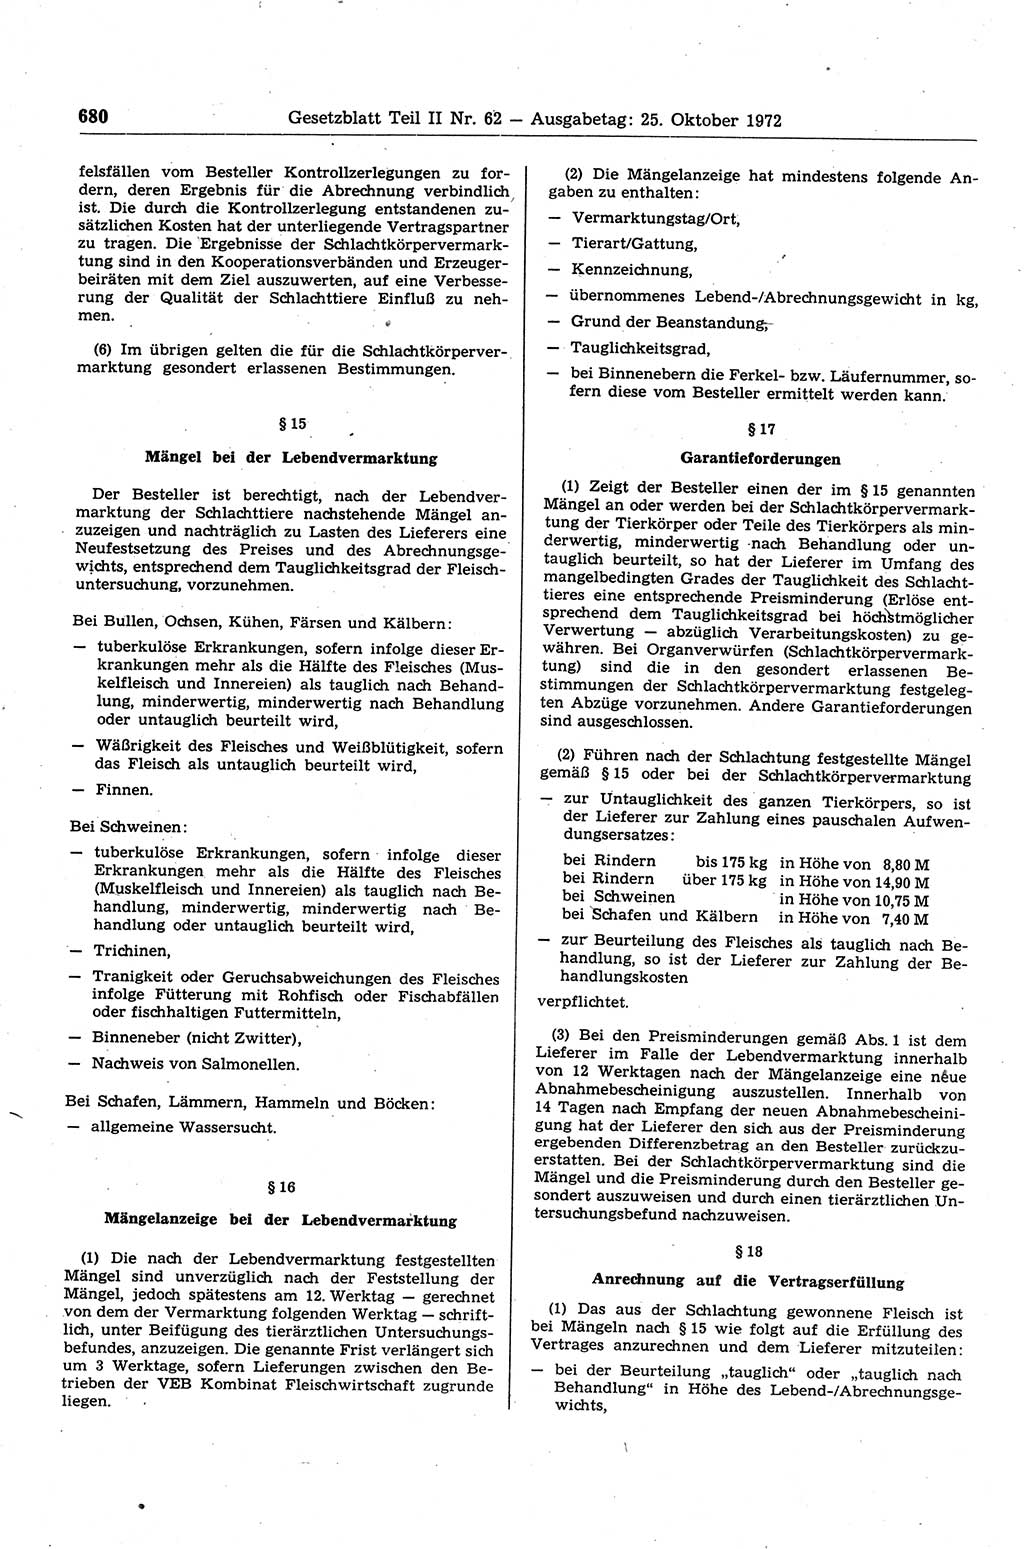 Gesetzblatt (GBl.) der Deutschen Demokratischen Republik (DDR) Teil ⅠⅠ 1972, Seite 680 (GBl. DDR ⅠⅠ 1972, S. 680)